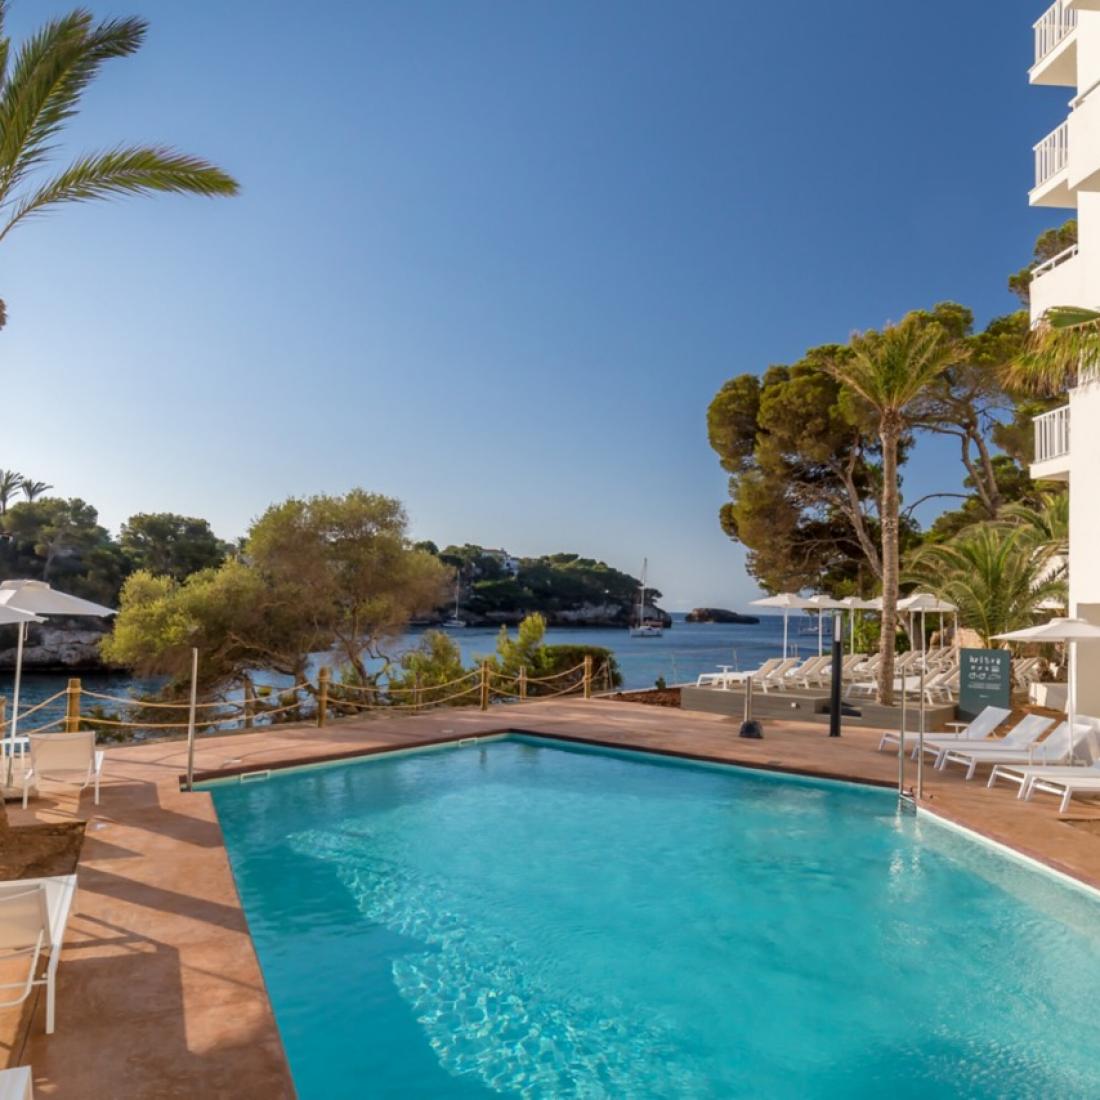 El principio fondo Rey Lear Hoteles en Mallorca | España | Barcelo.com